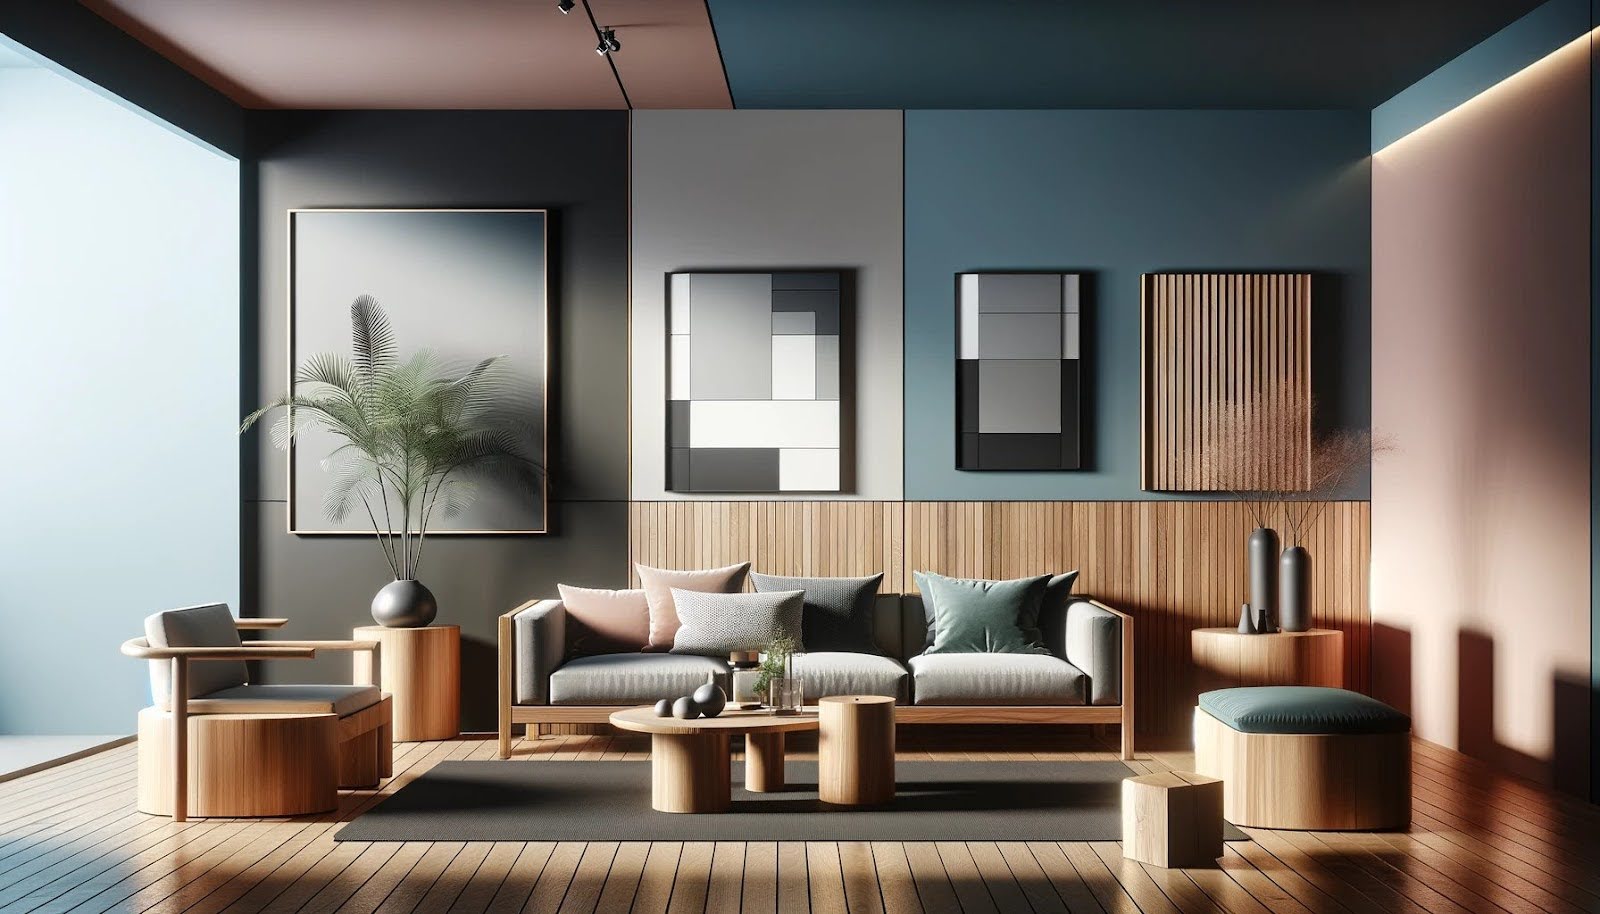 moderný interiér, zariadený dreveným nábytkom s chladným podtónom v ideálnej kombinácii so stenami kontrastnej farby